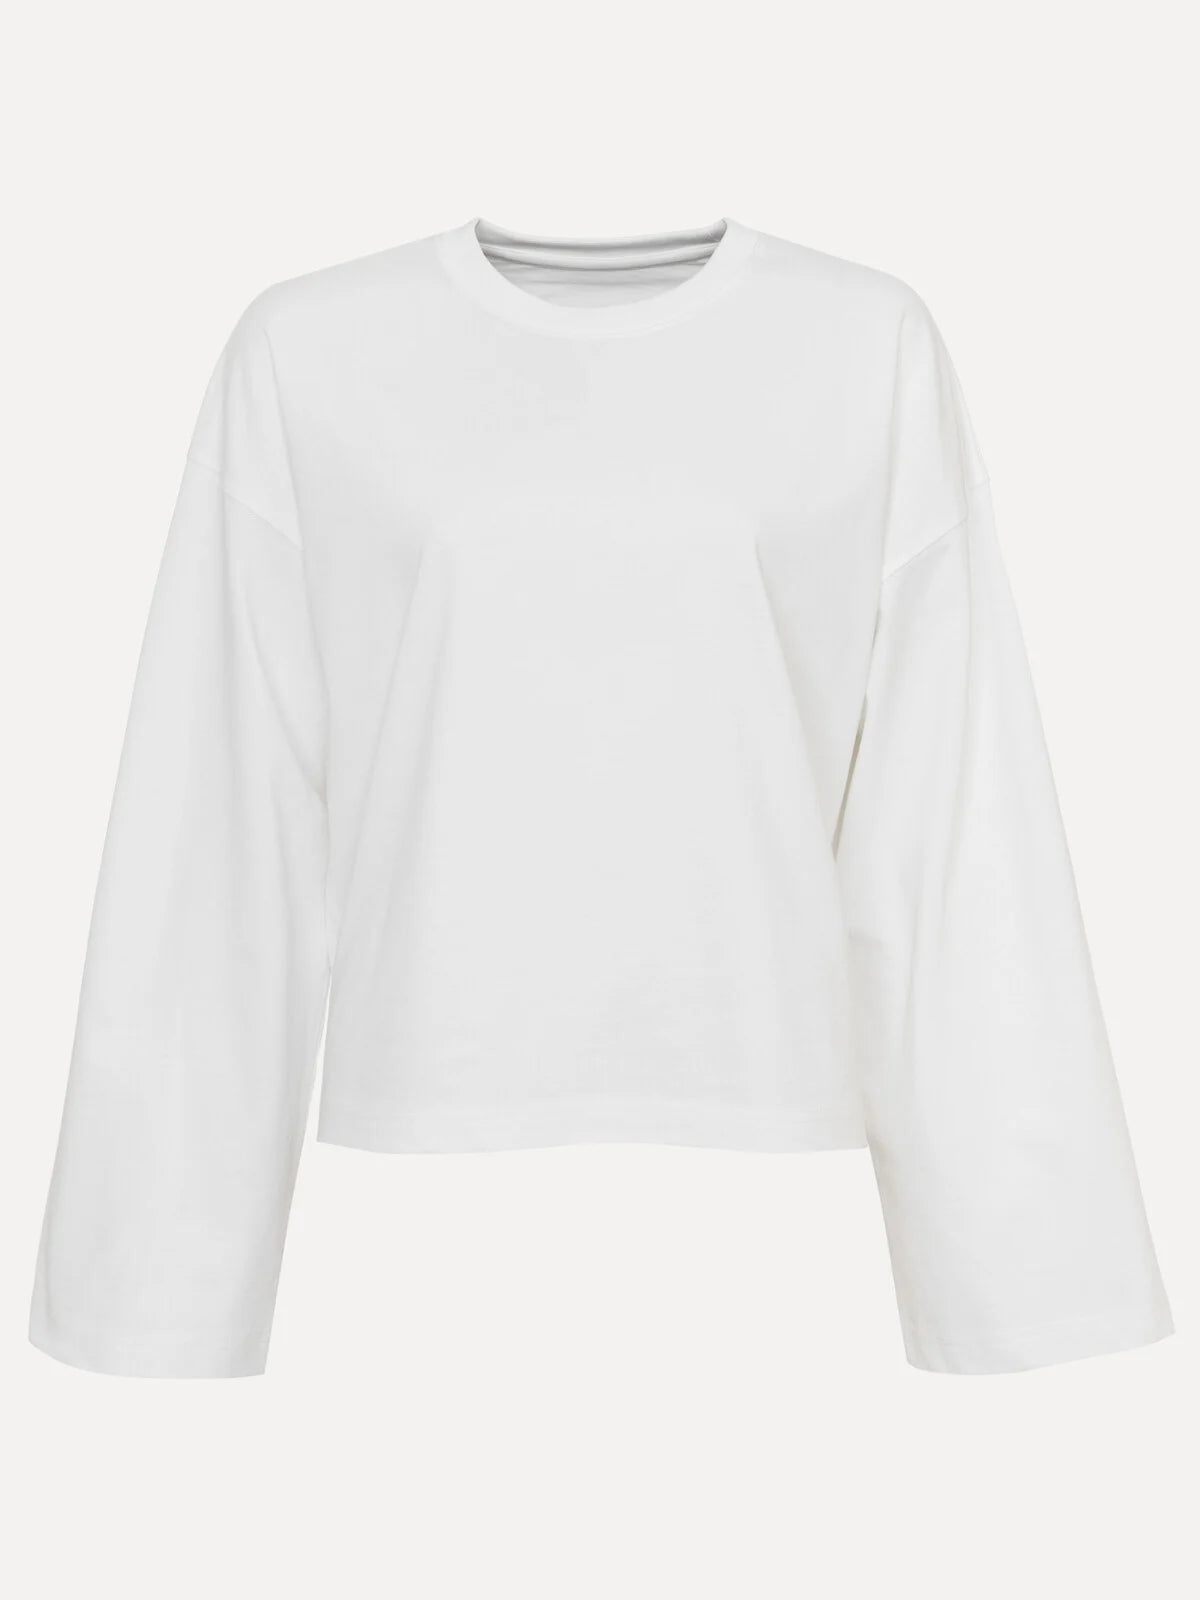 ALINE longsleeve T-shirt WHITE